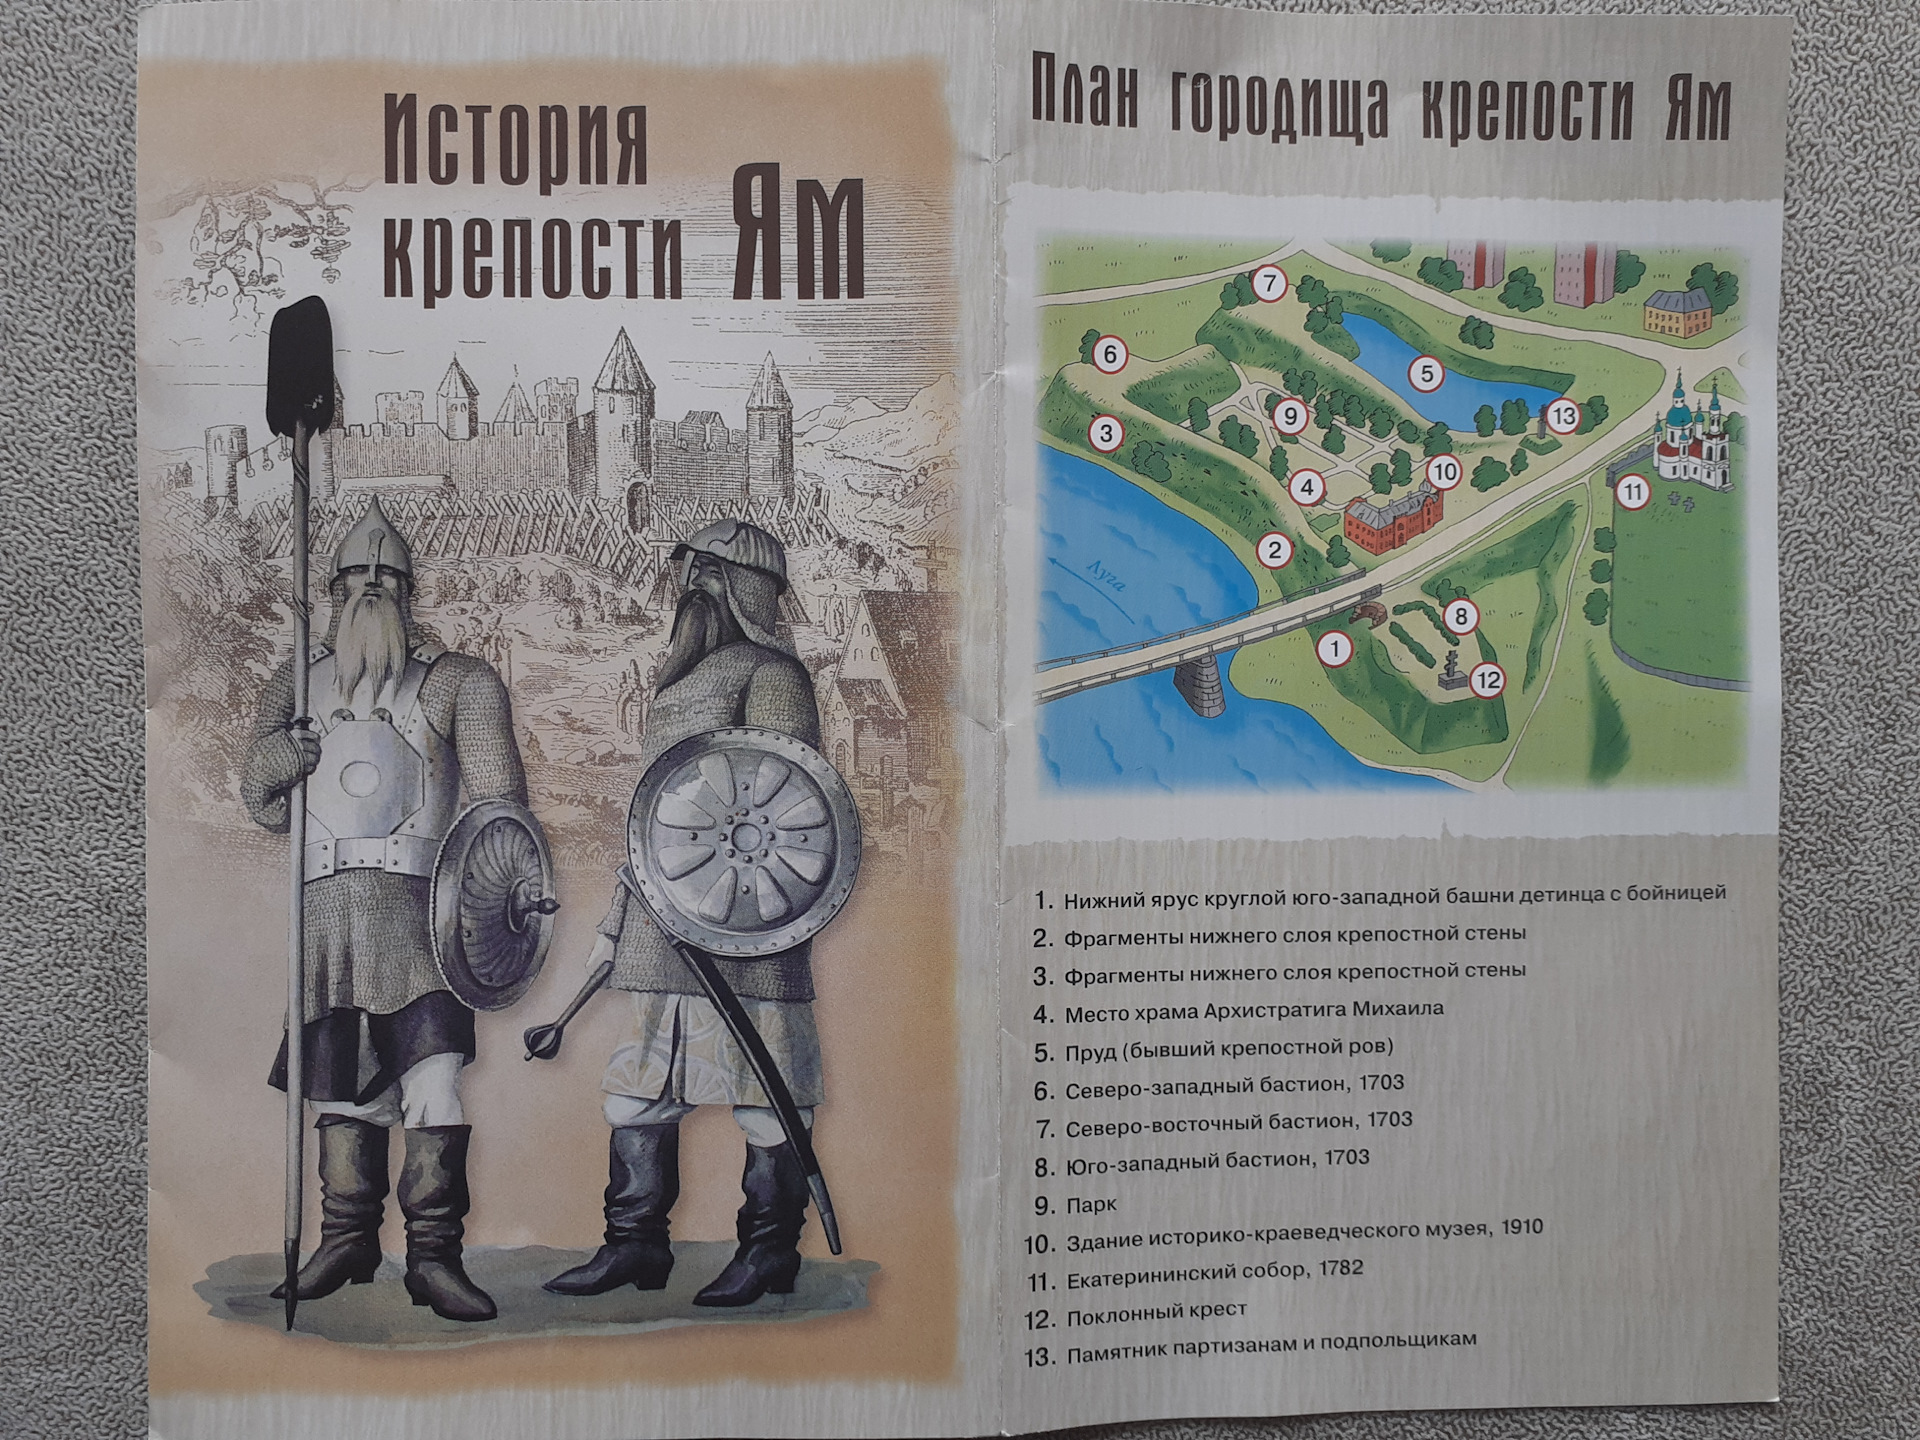 Ямгородская крепость крепость ям